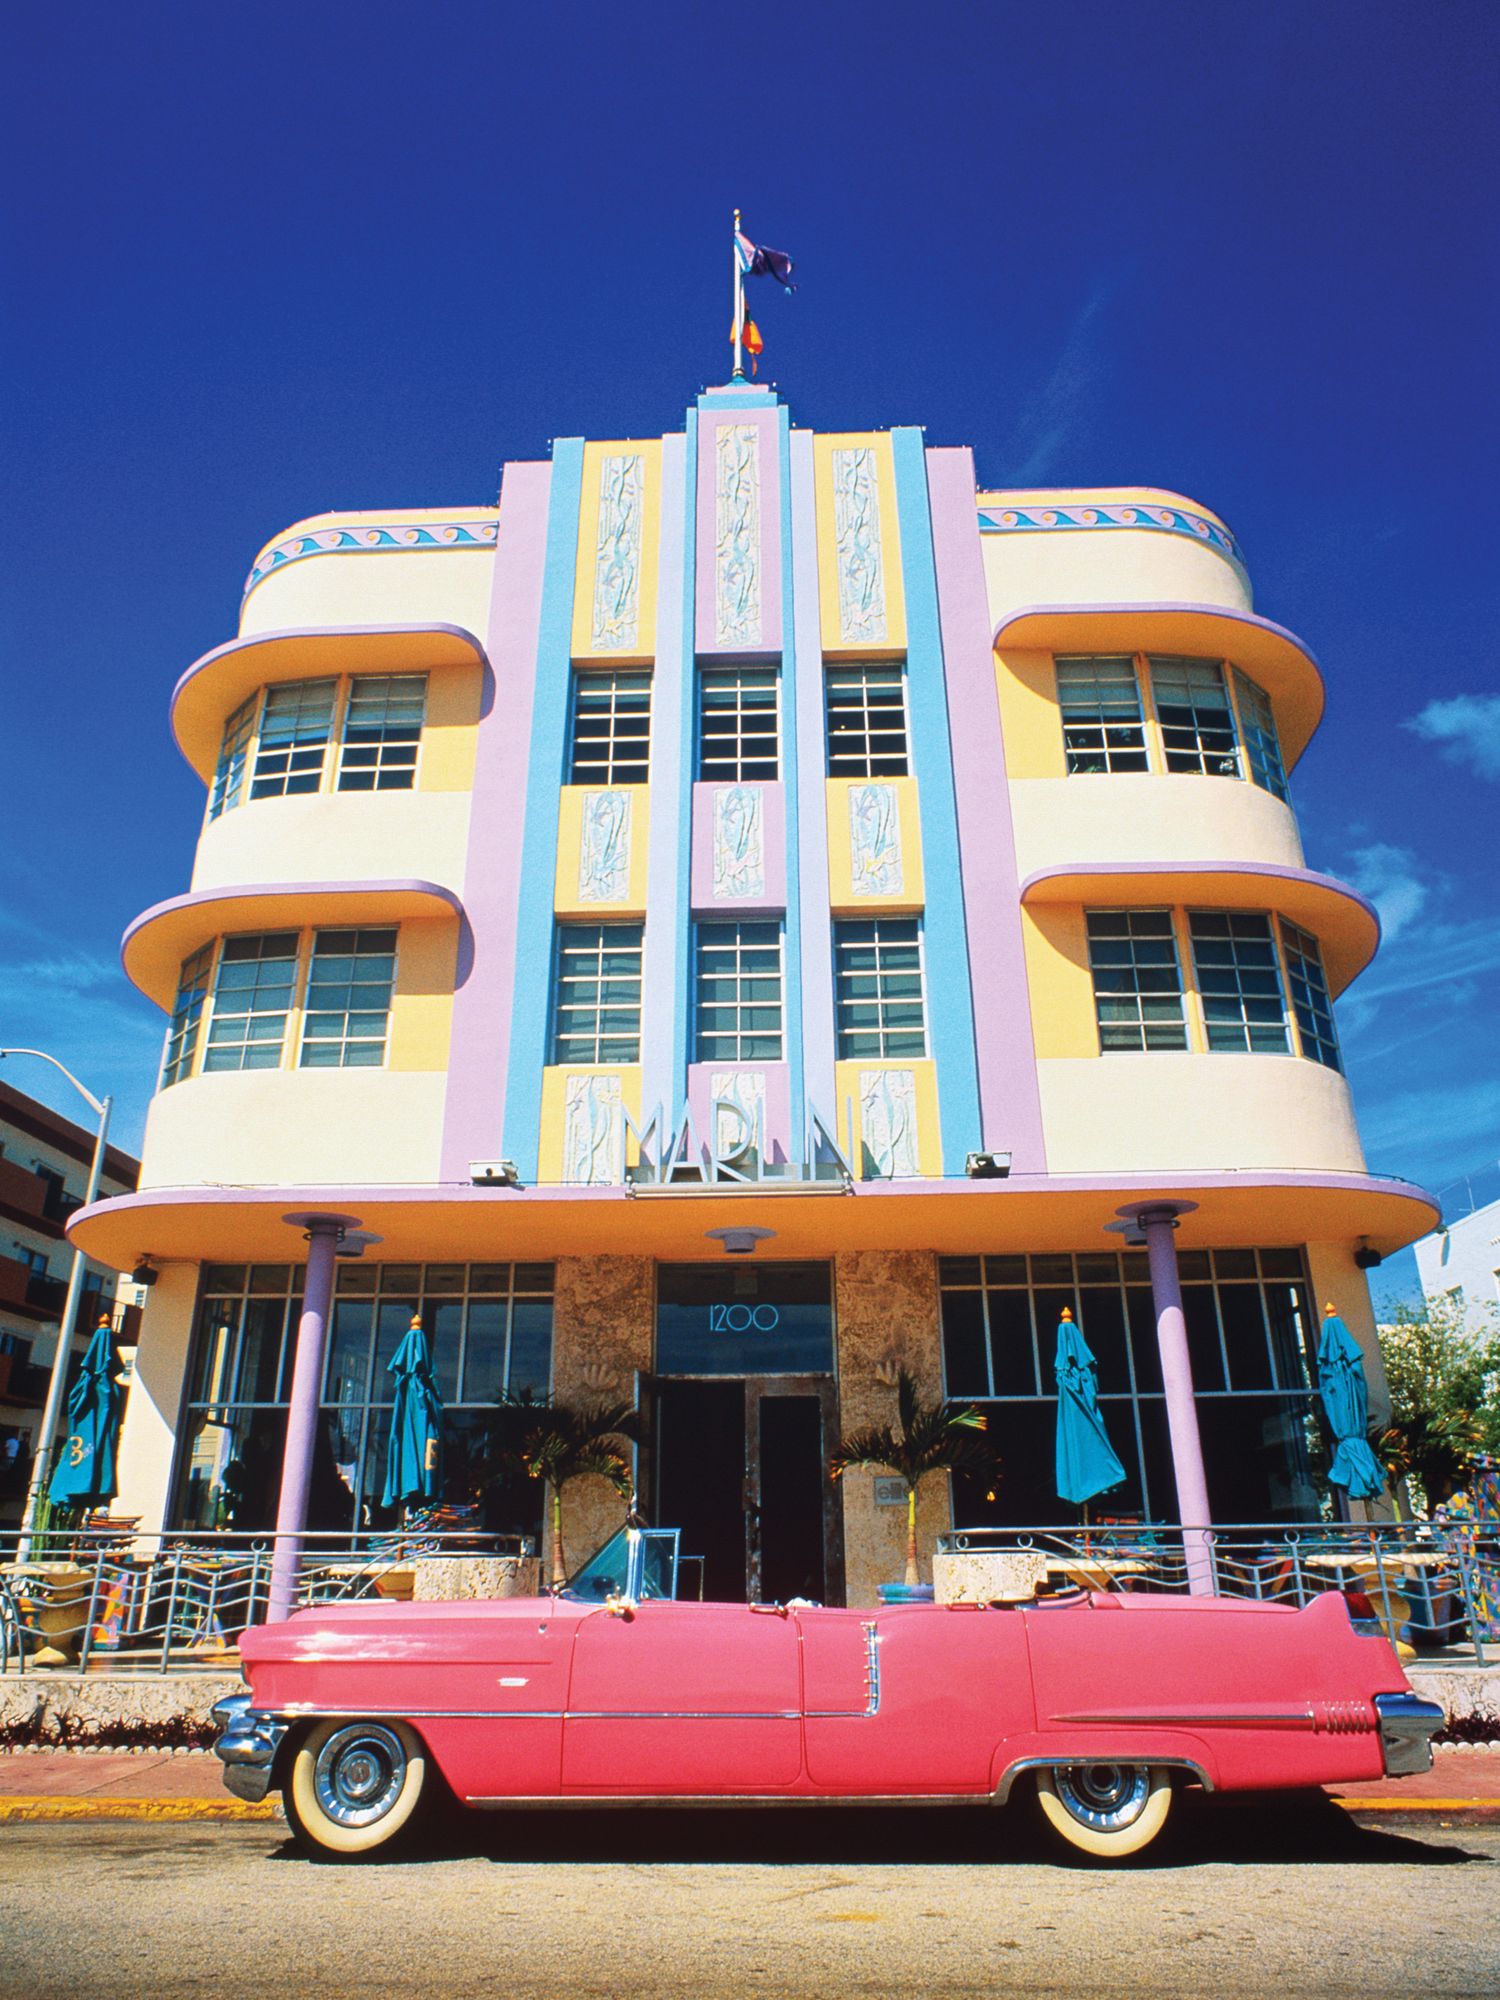 Art Deco District of Miami.